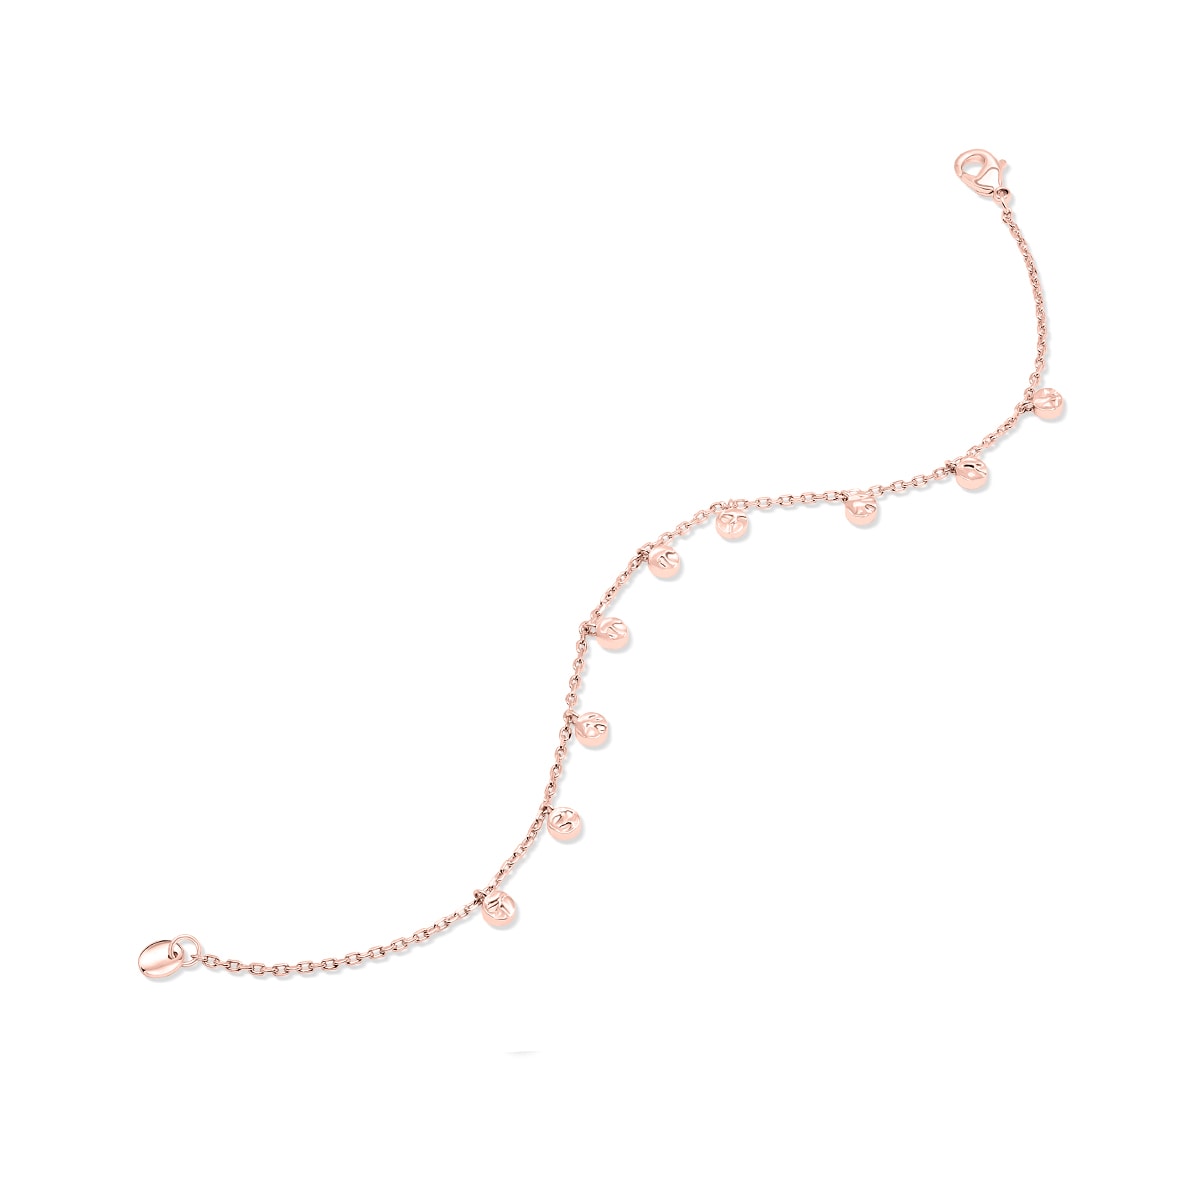 Affordable rose gold chain bracelet